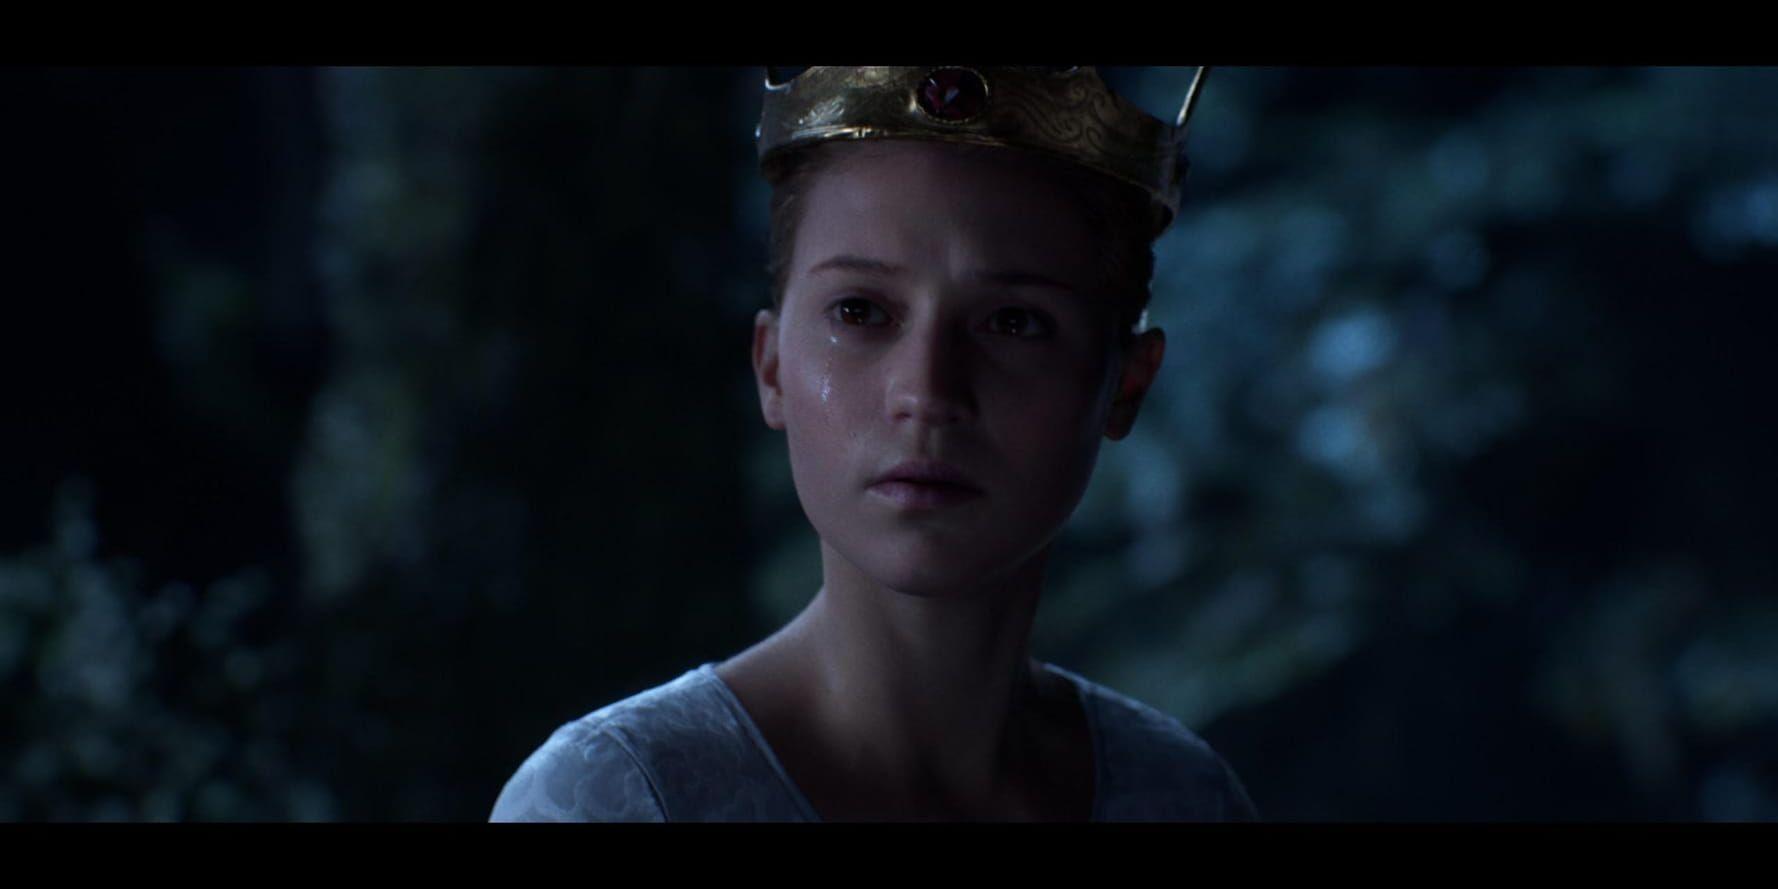 Alicia Vikanders skådespeleri översattes via motion capture till den digitala versionen av henne i filmen. Pressbild.